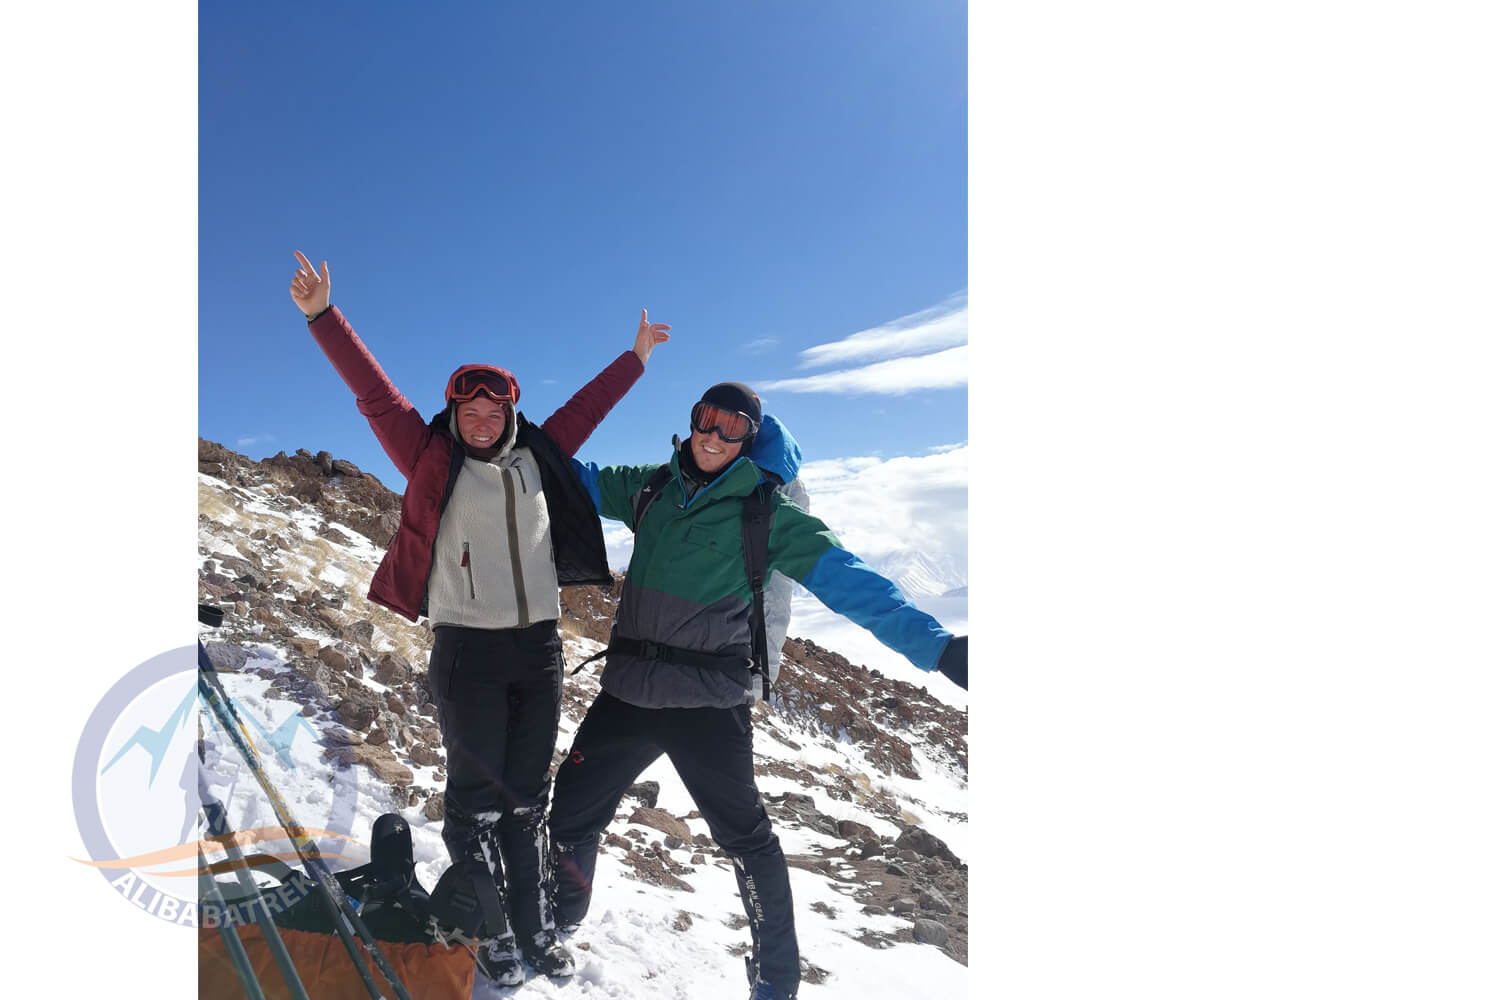 Alibabatrek top 3 summit of iran trekking tour mount damavand